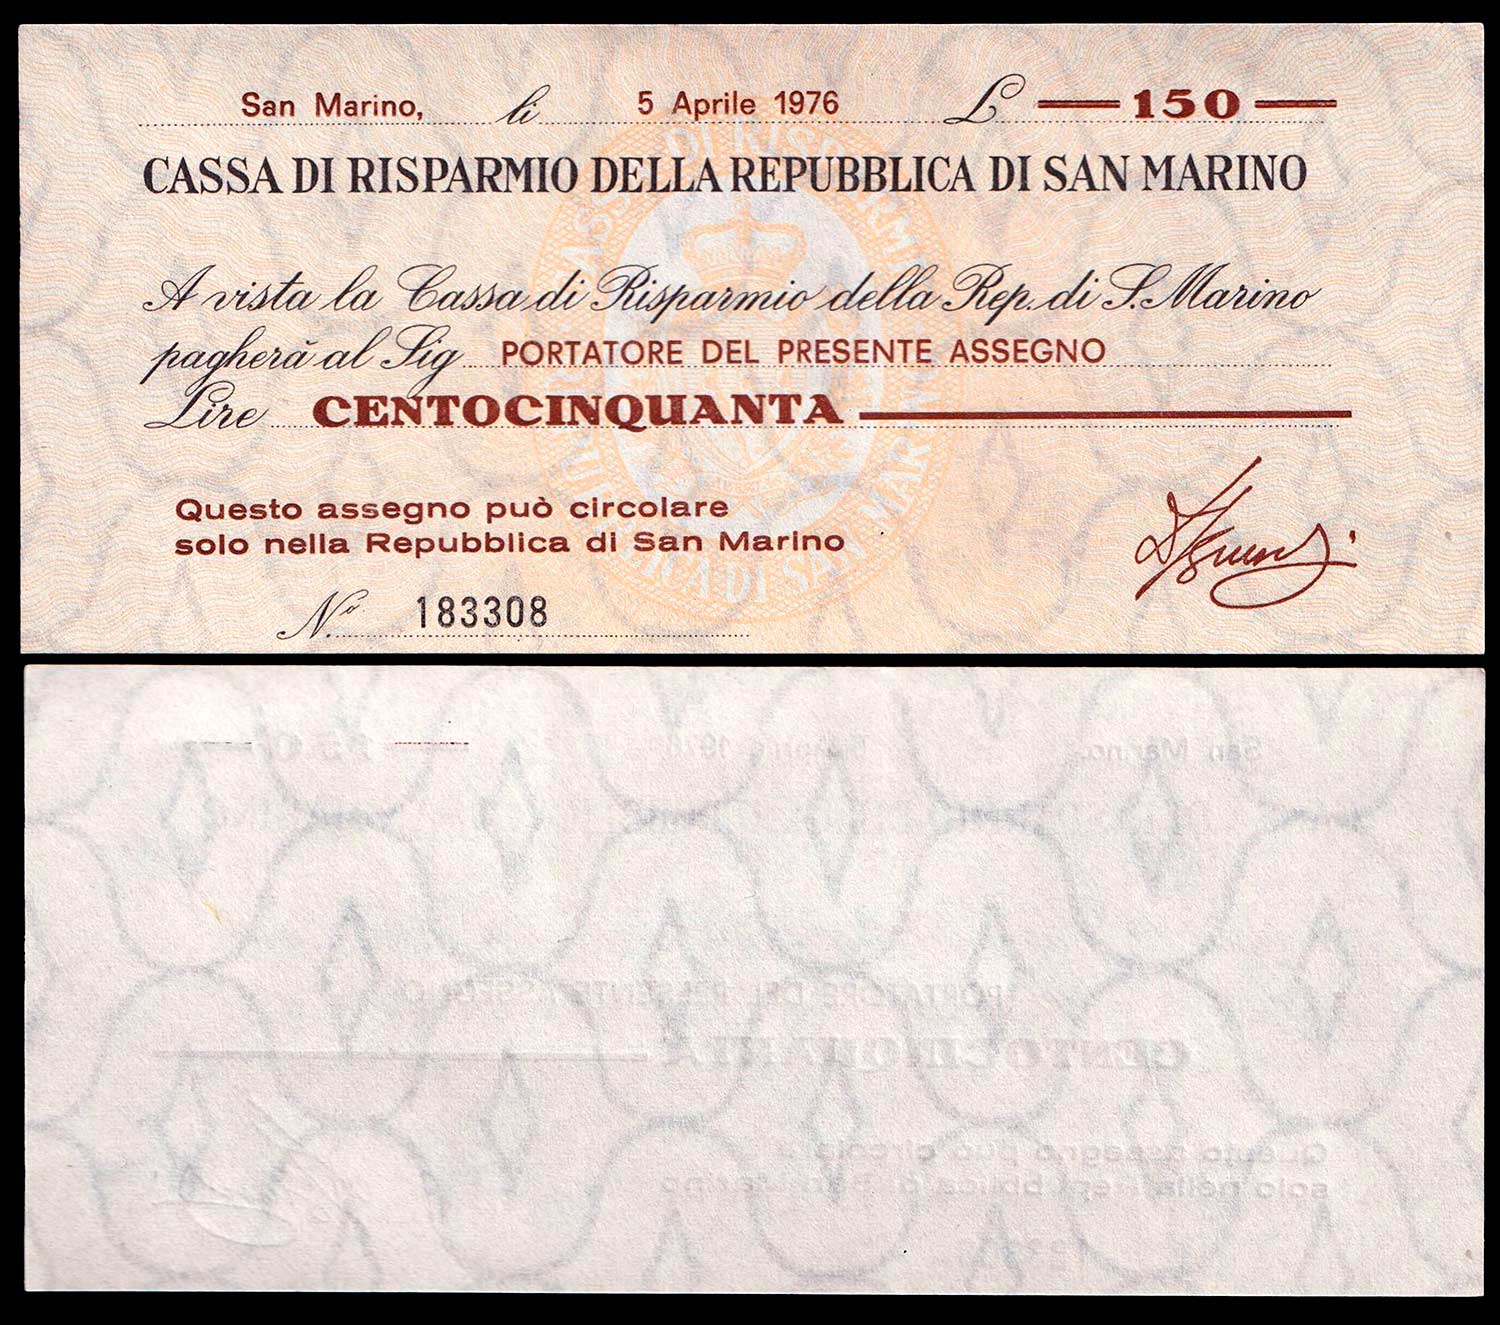 Lire 150 Banconota Miniassegno 5 Aprile 1976 Fior Di Stampa